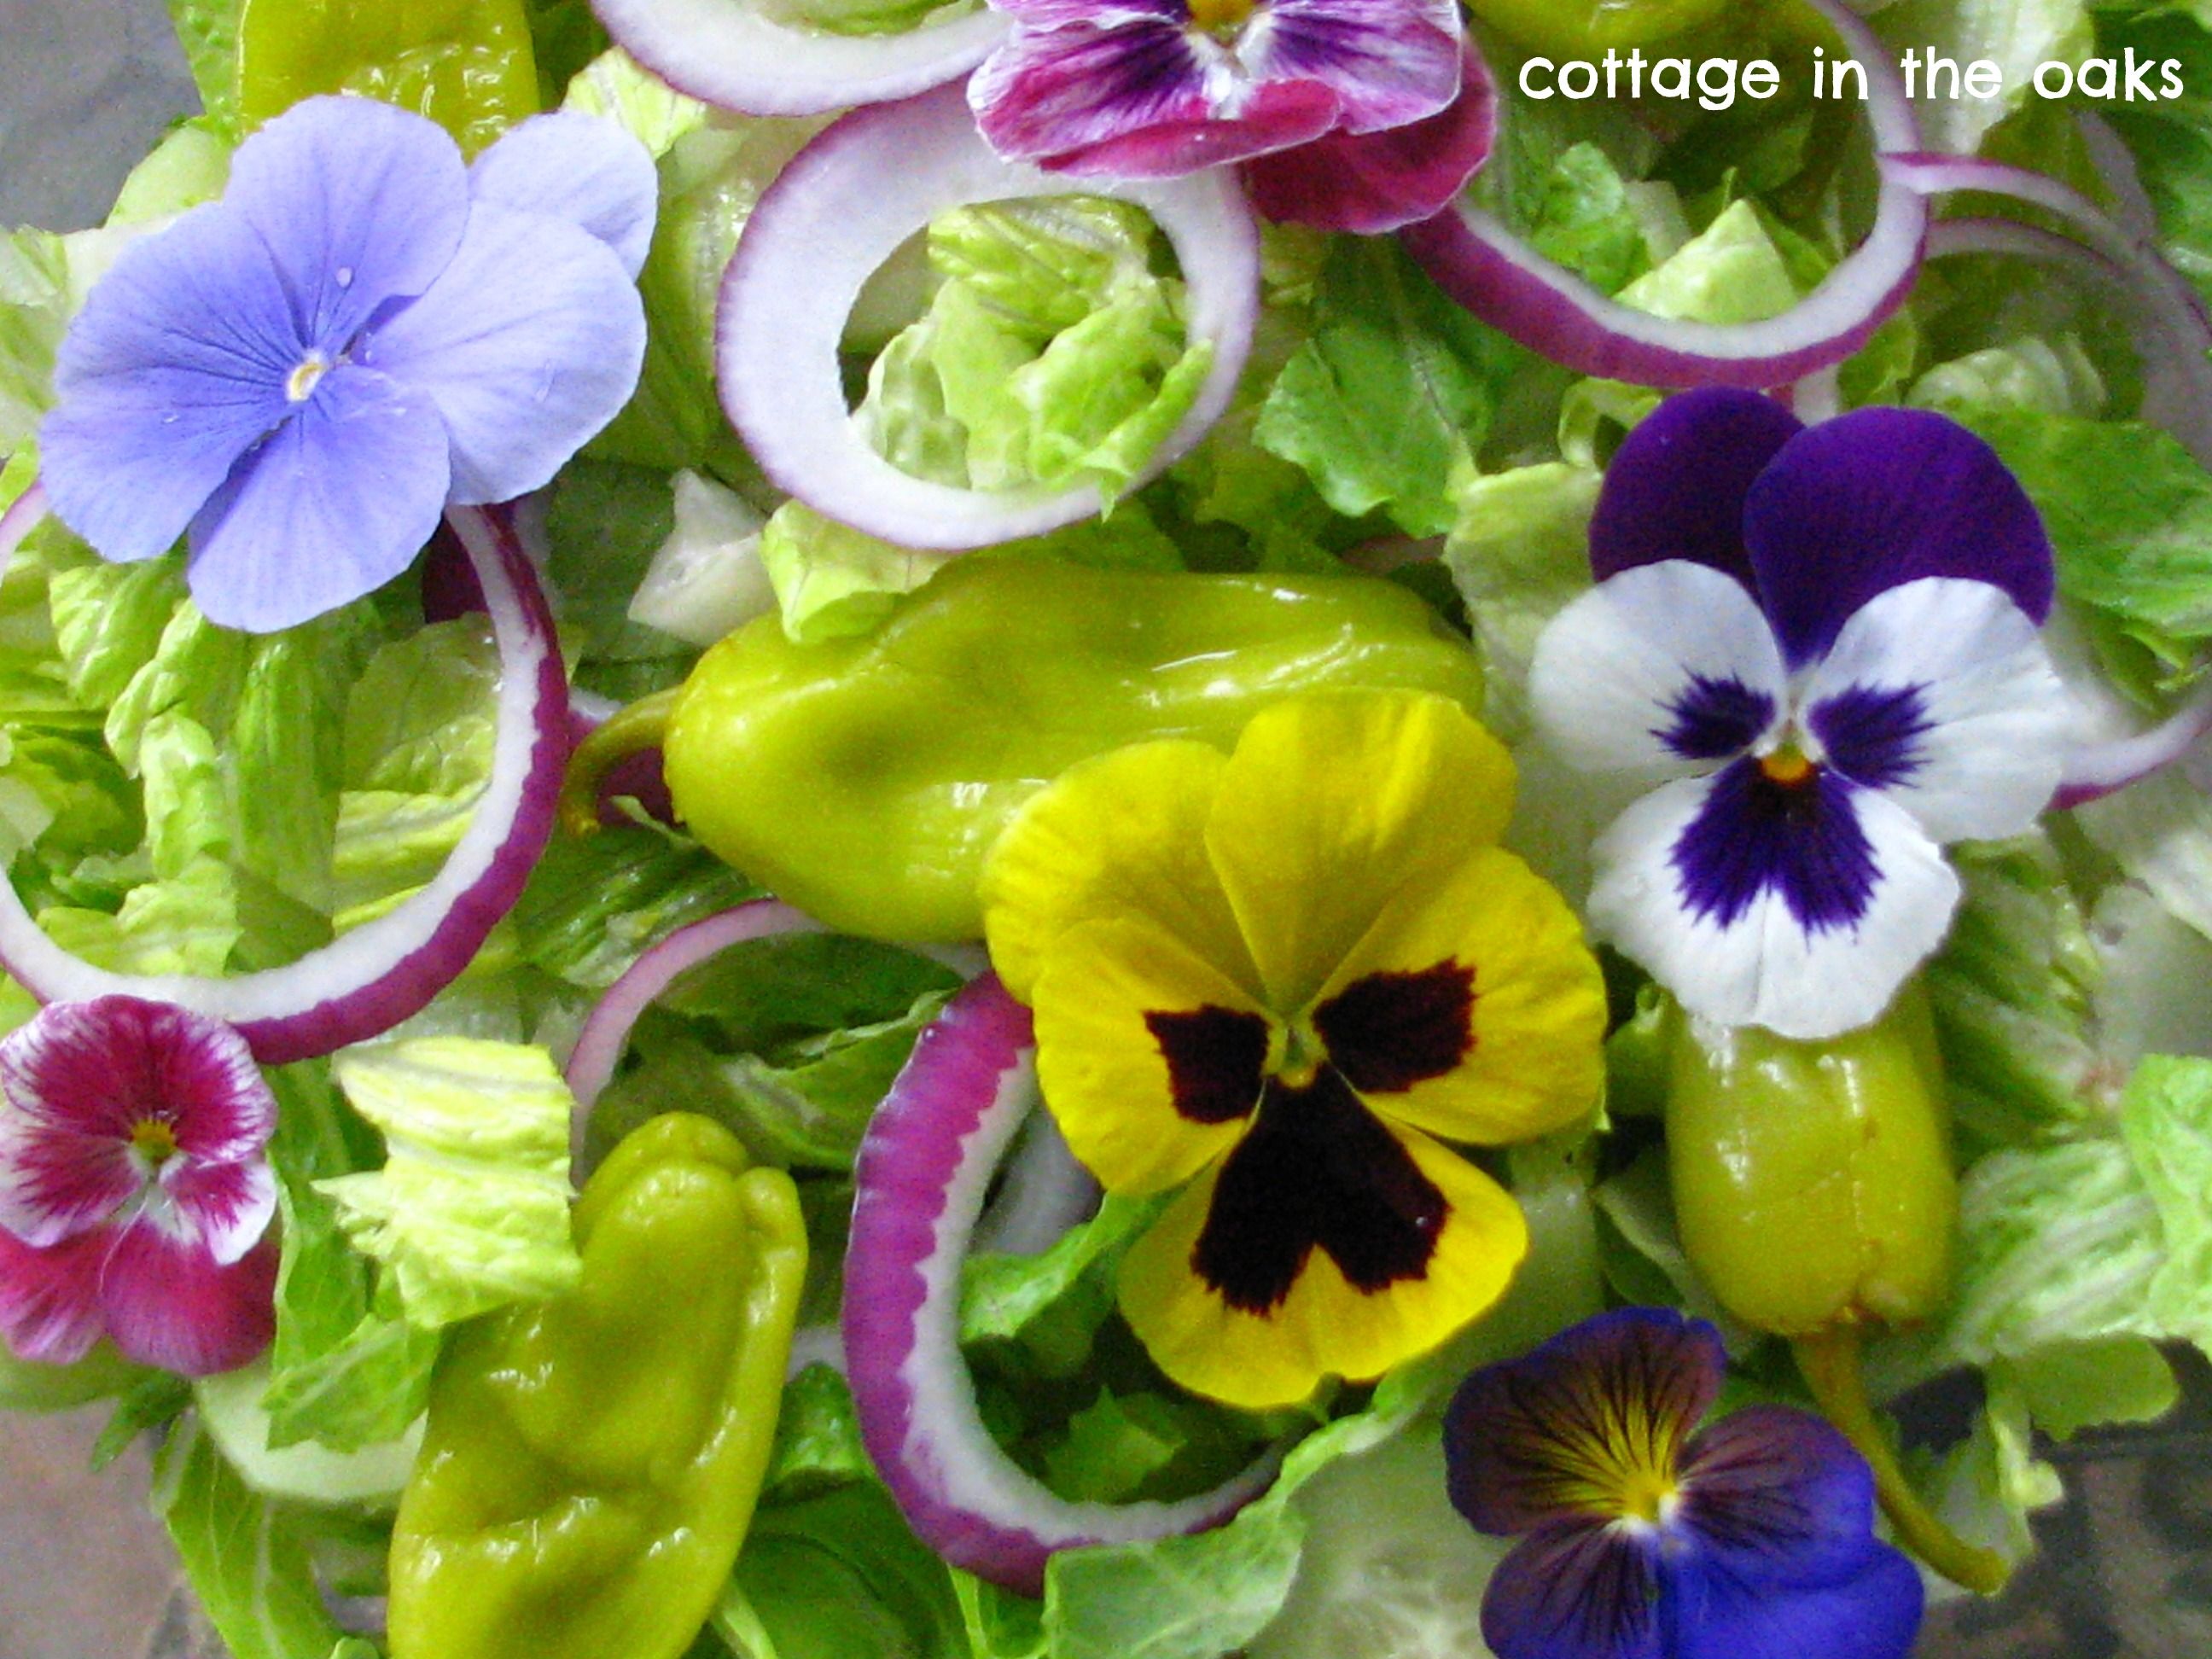 Pansies in Our Salad | Edible flowers, Pansies and Salad